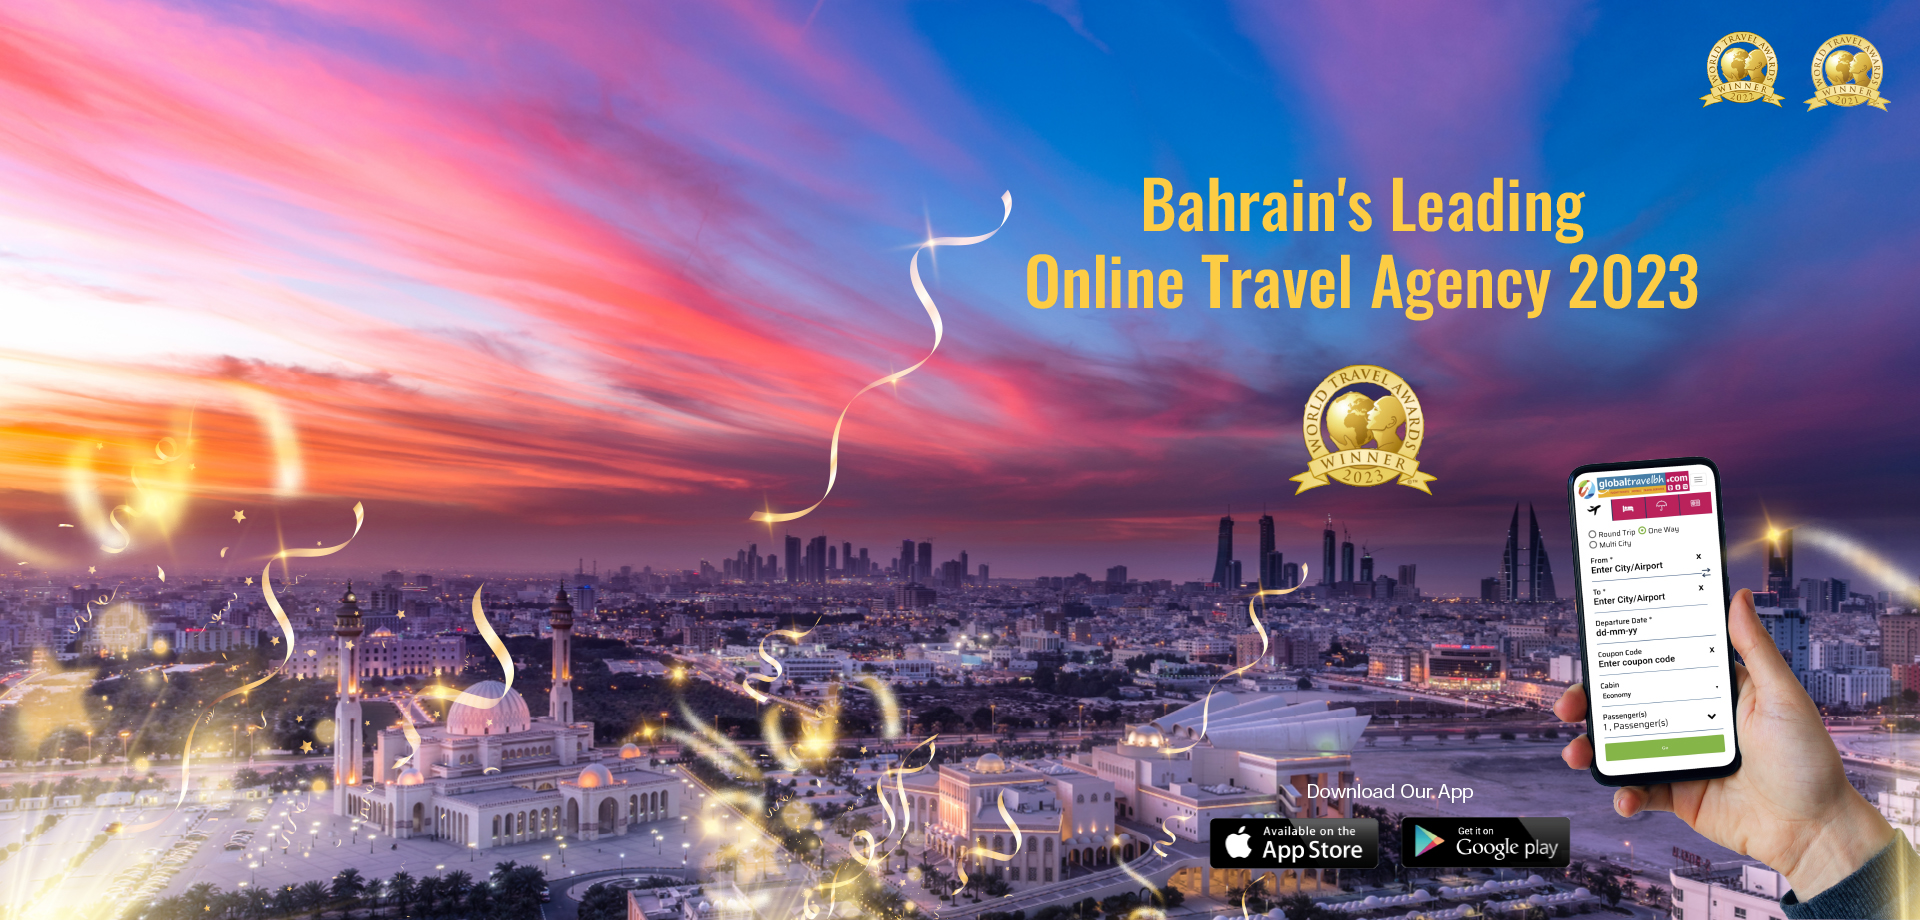 Bahrain's Leading Online Travel Agency